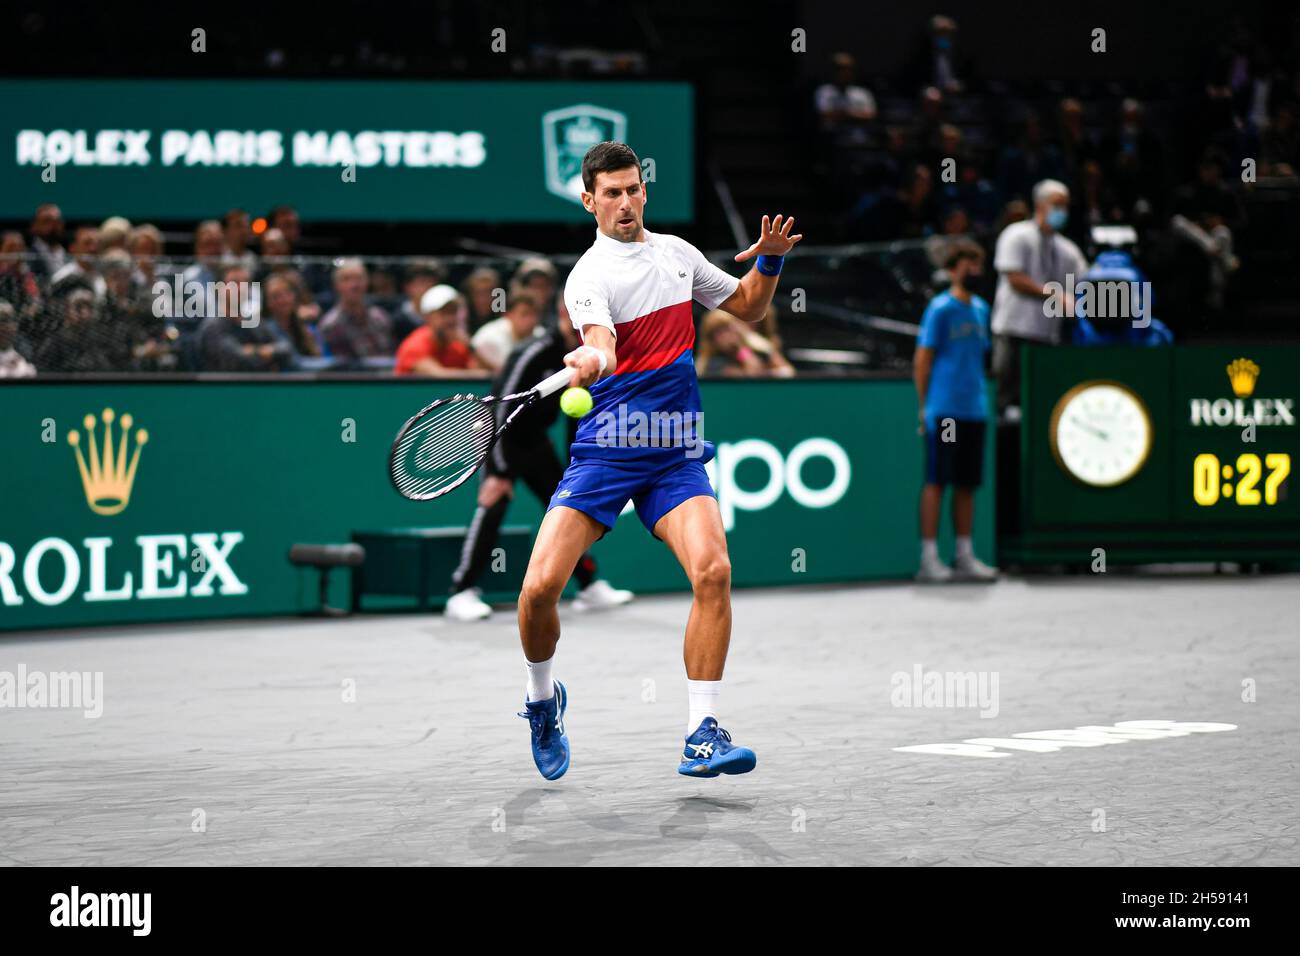 Novak Djokovic de Serbia durante el Rolex Paris Masters 2021, torneo de  tenis ATP Masters 1000, el 2 de noviembre de 2021 en Accor Arena de París,  Francia Fotografía de stock - Alamy